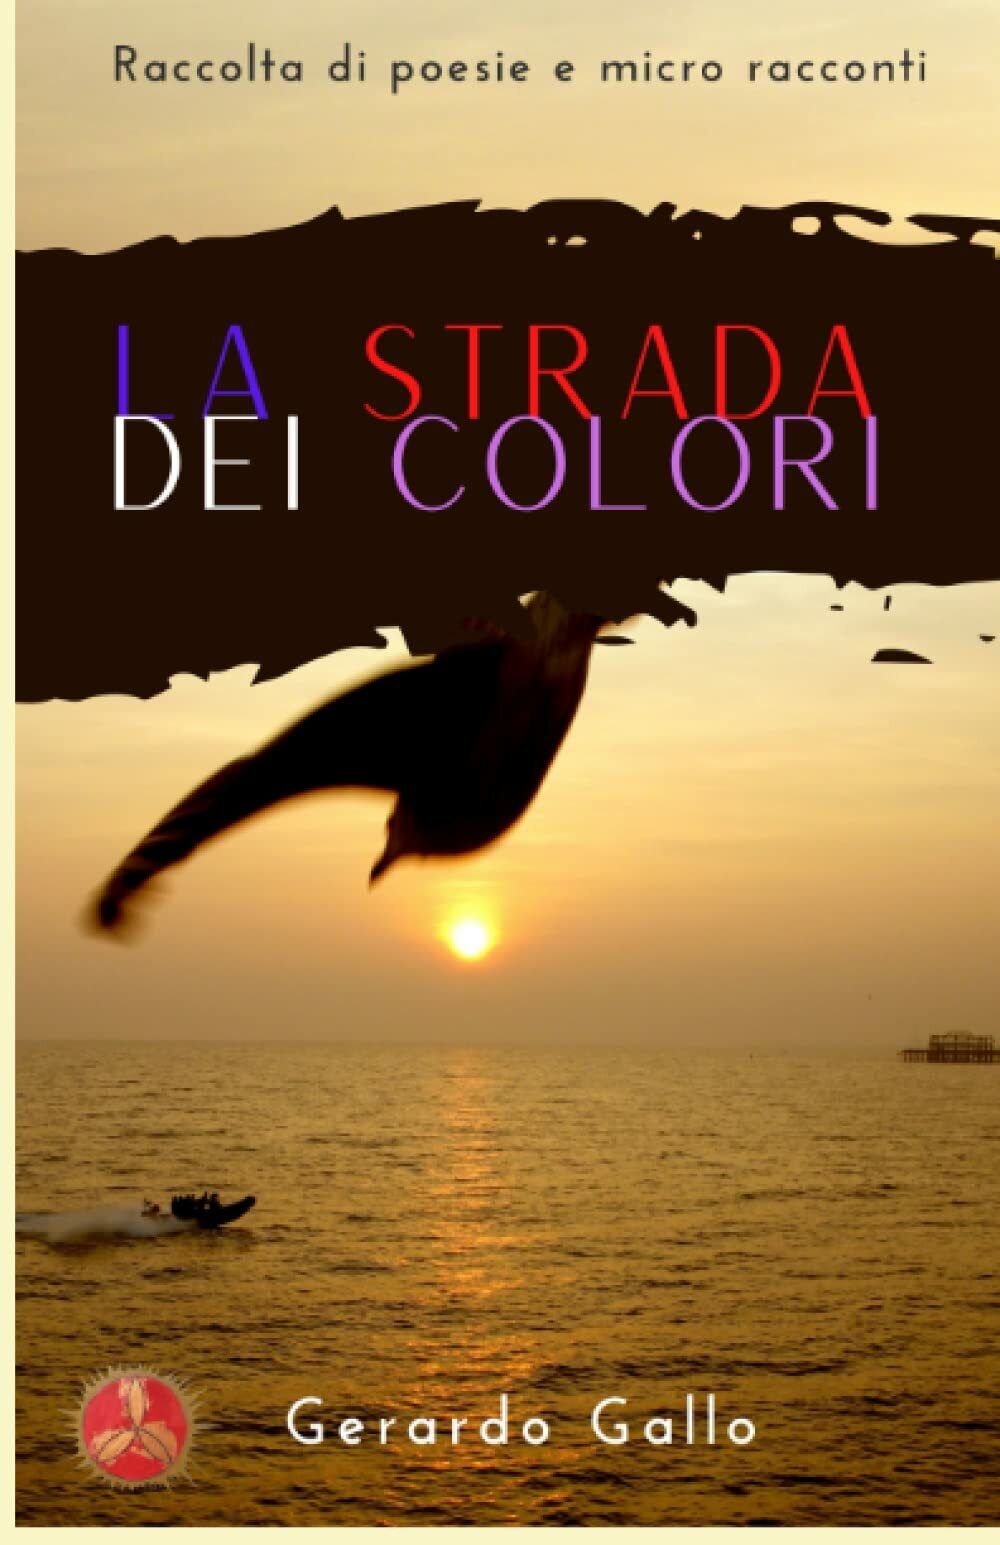 la strada dei colori: raccolta di poesie e micro racconti di Gerardo Gallo,  20